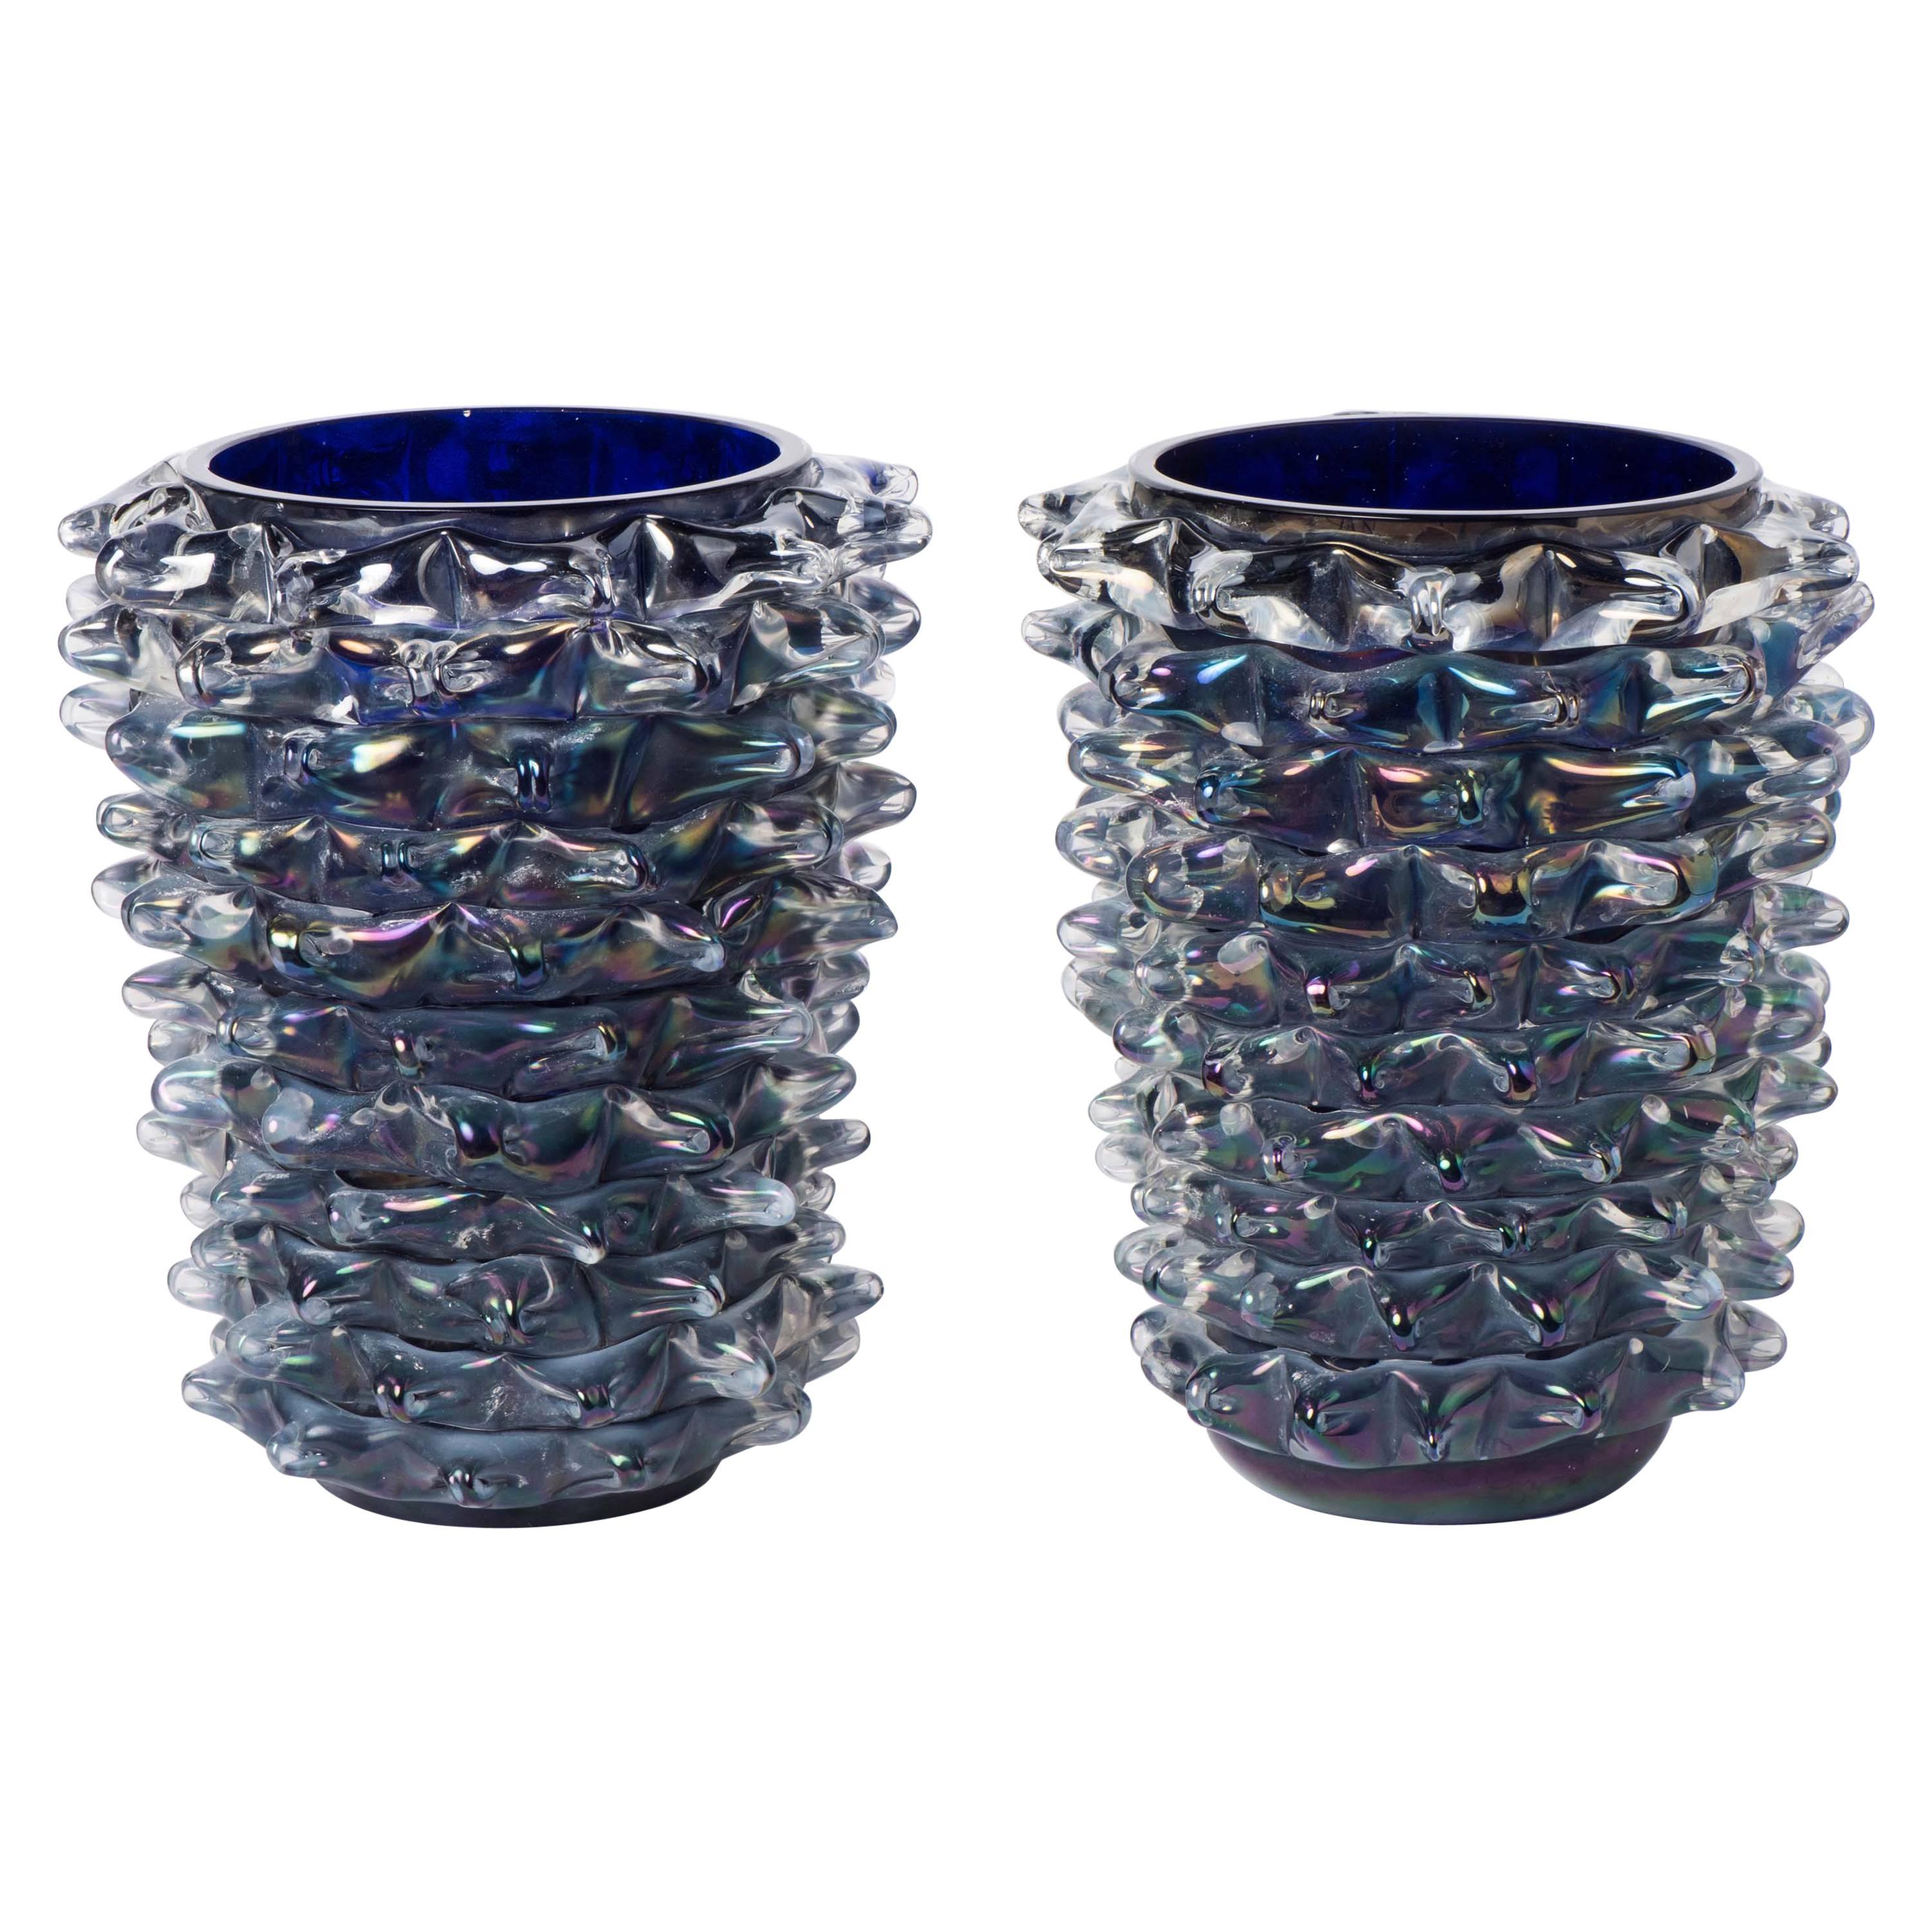 Silvano Signoretto pair of zaffire Murano glass "Rostratti" vases, Italy 2016